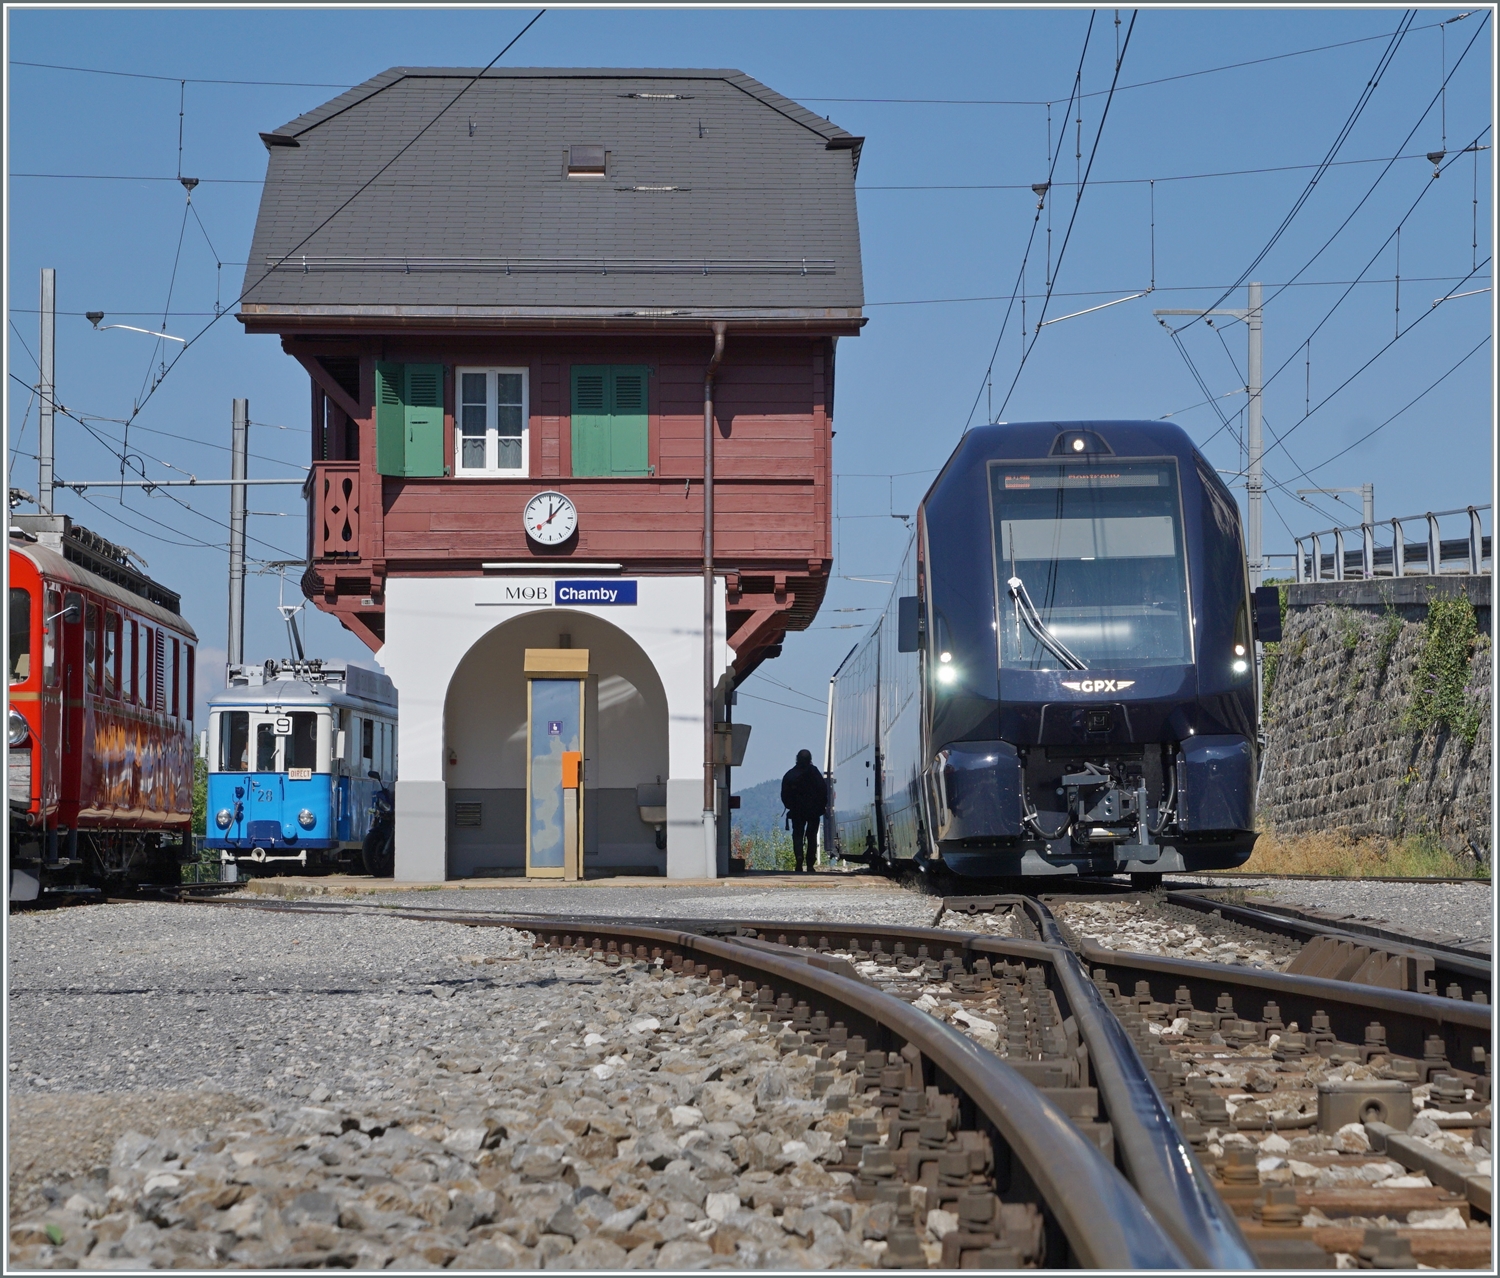 Da der GoldenPass Express von Interlaken Ost nach Montreux in Chamby auf den Gegenzug wartet, ist die Schranke beim Bahnübergang noch geöffnet und somit bietet der Übergang diese Sicht auf den GPX 4065. 

9. Sept. 2023